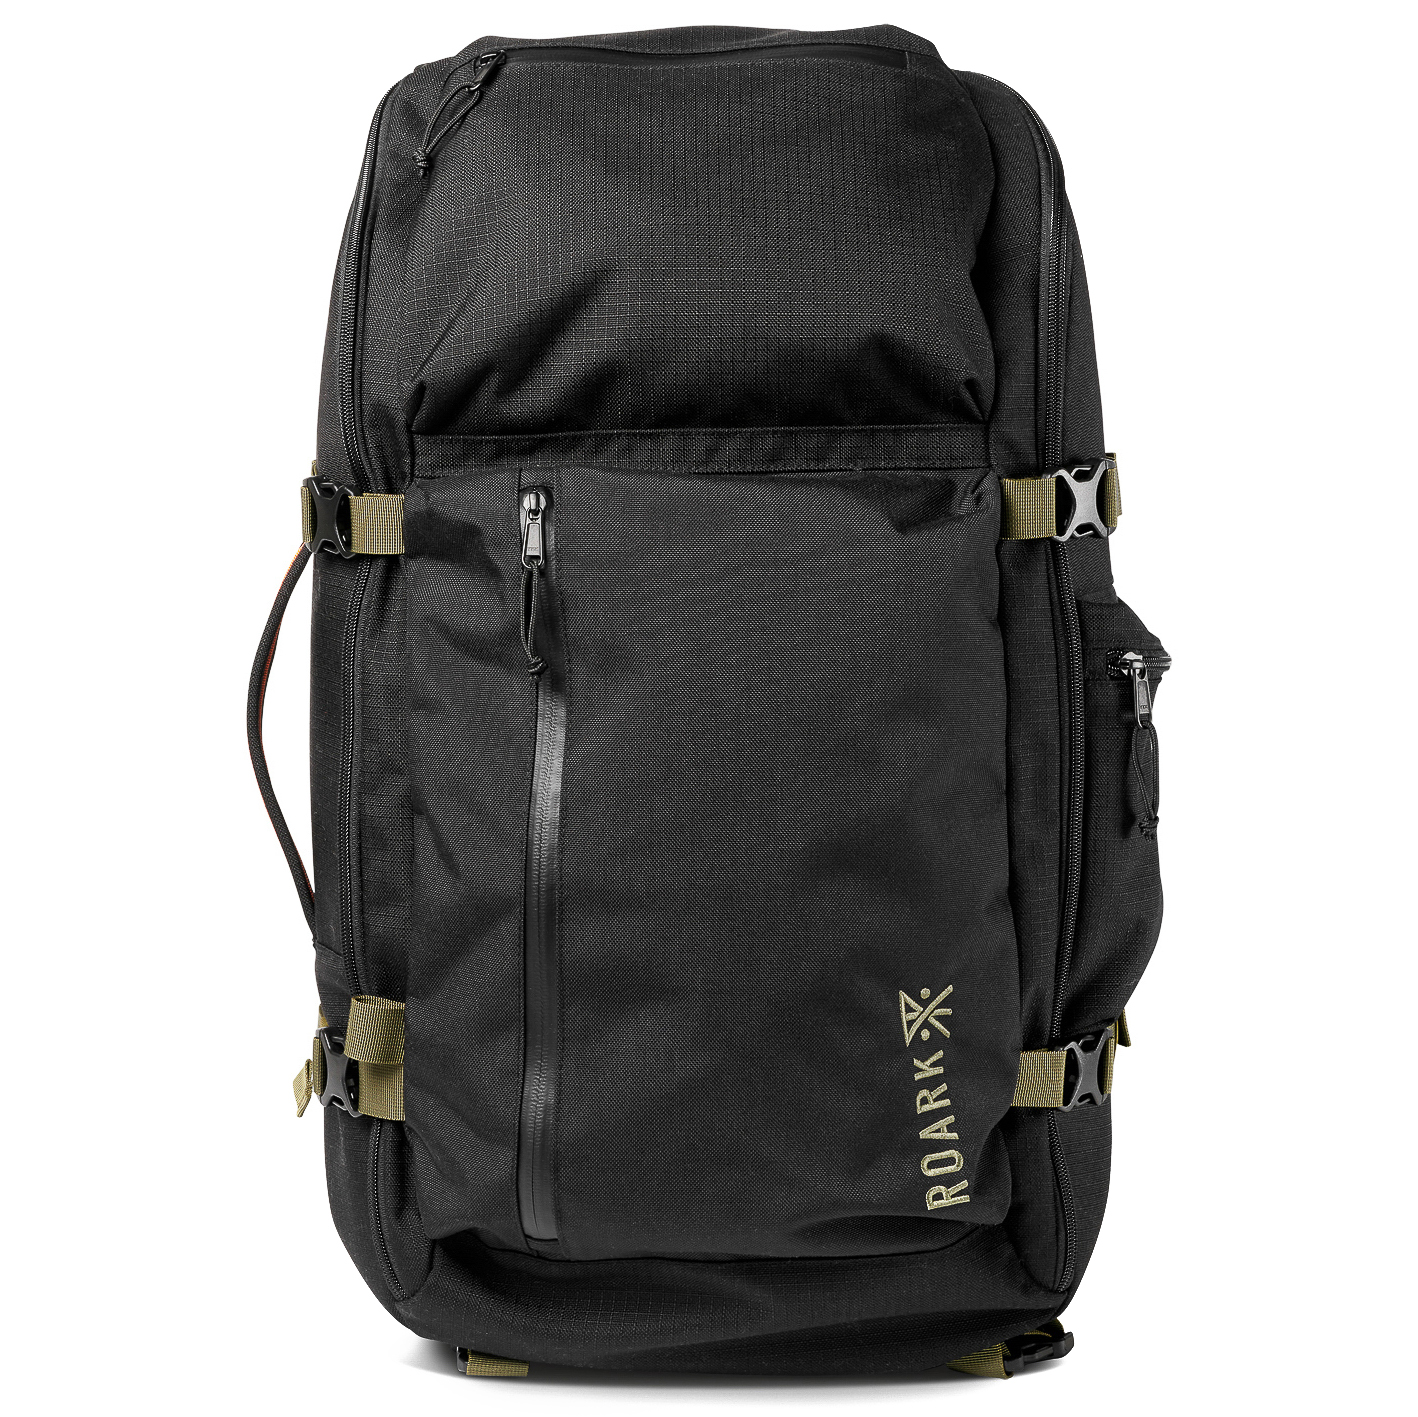 Roark 5-Day Mule - 55L - Black | Backpacks | Huckberry